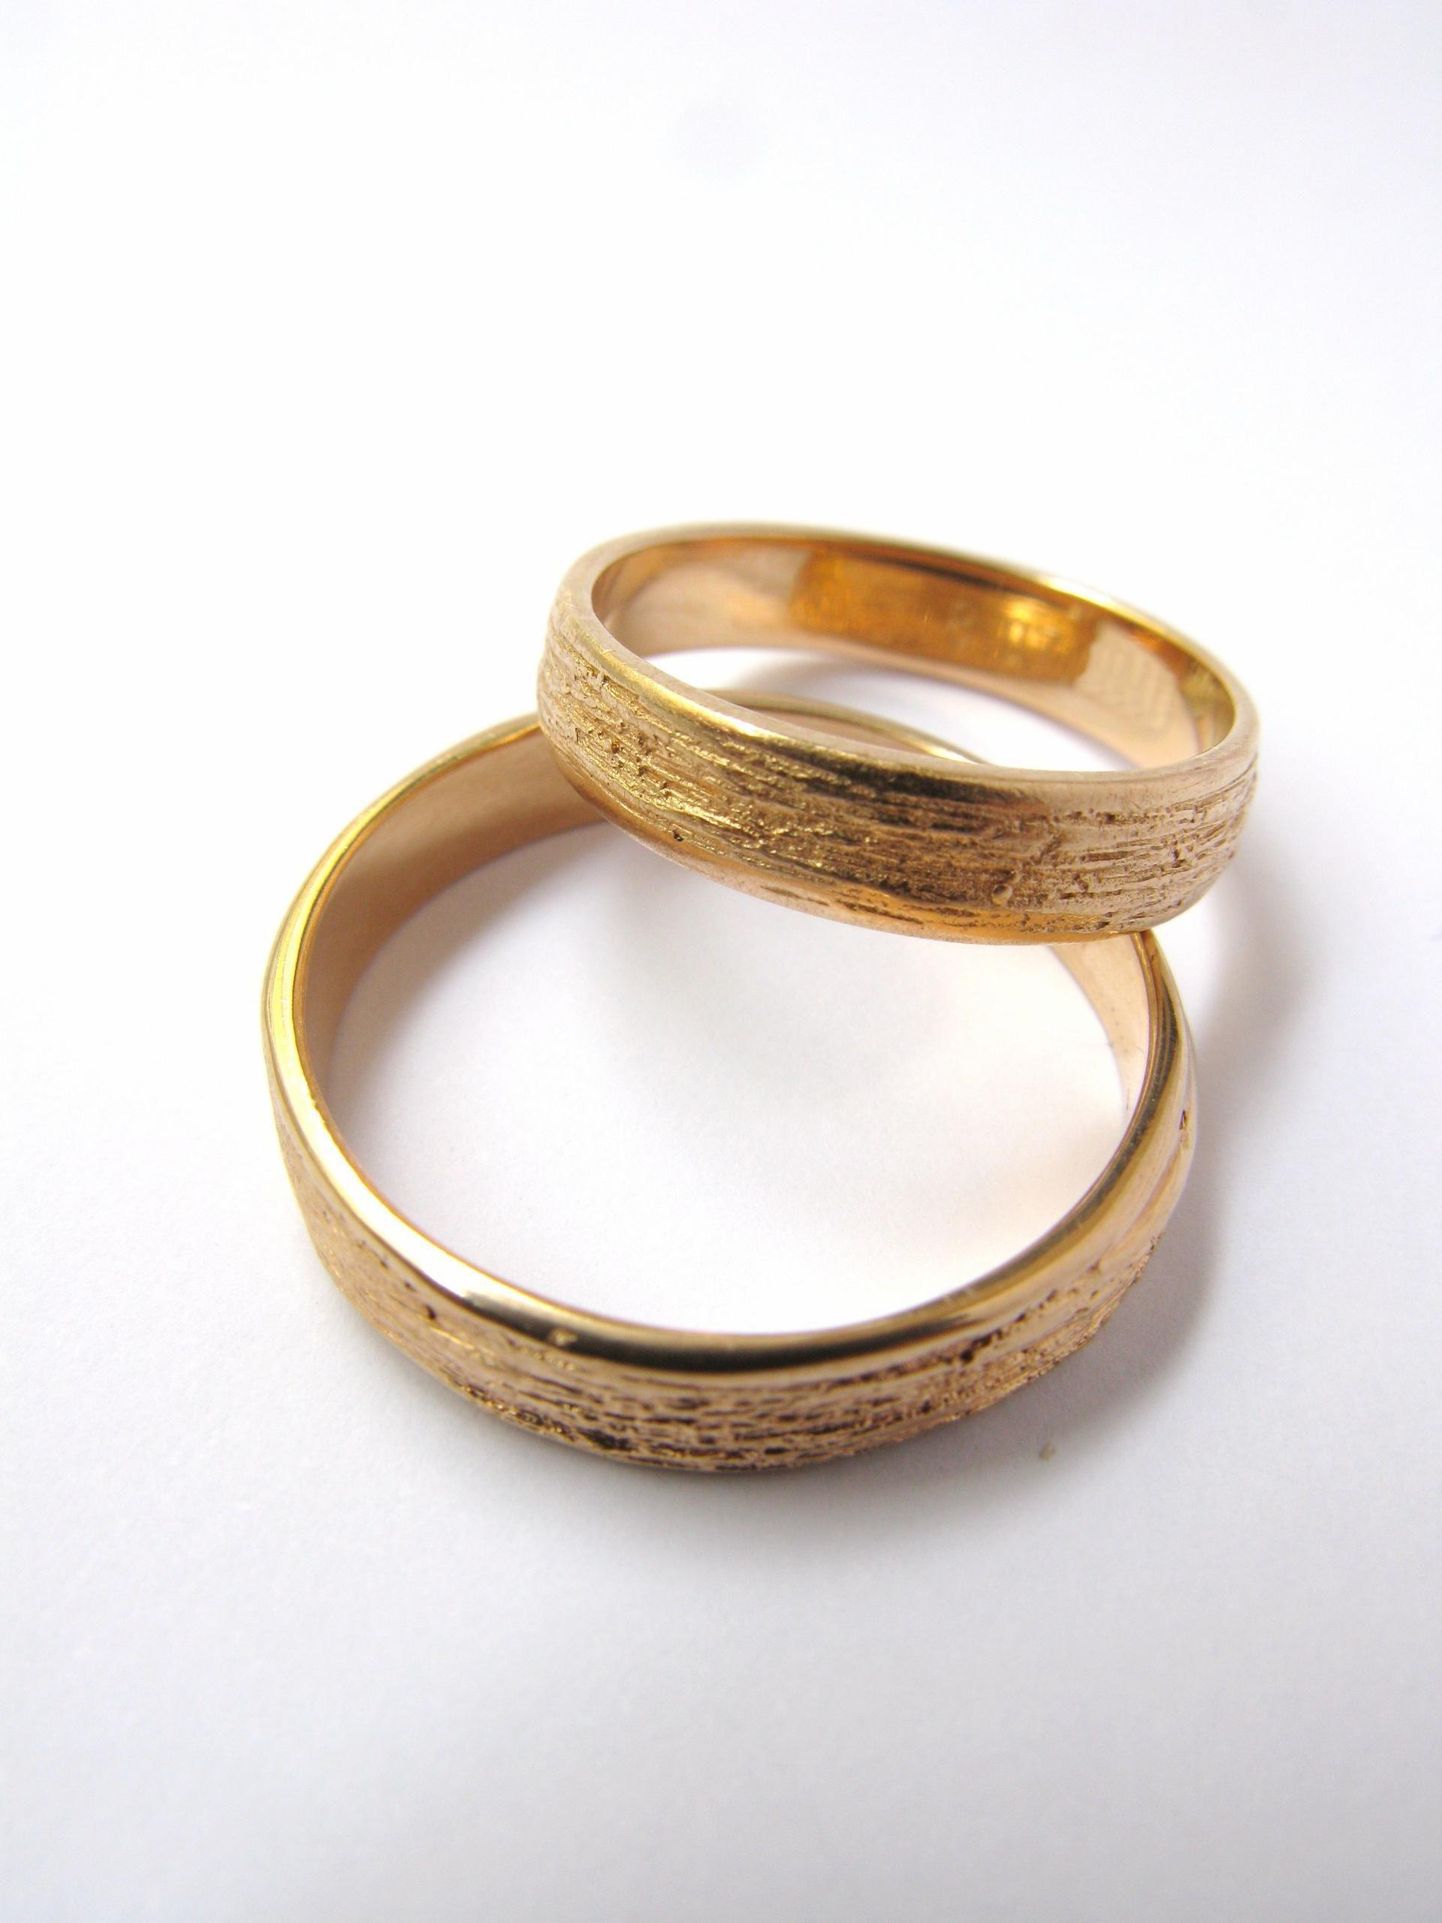 Kullast abielusõrmus on abielu sümbol. Foto on illustreeriv.